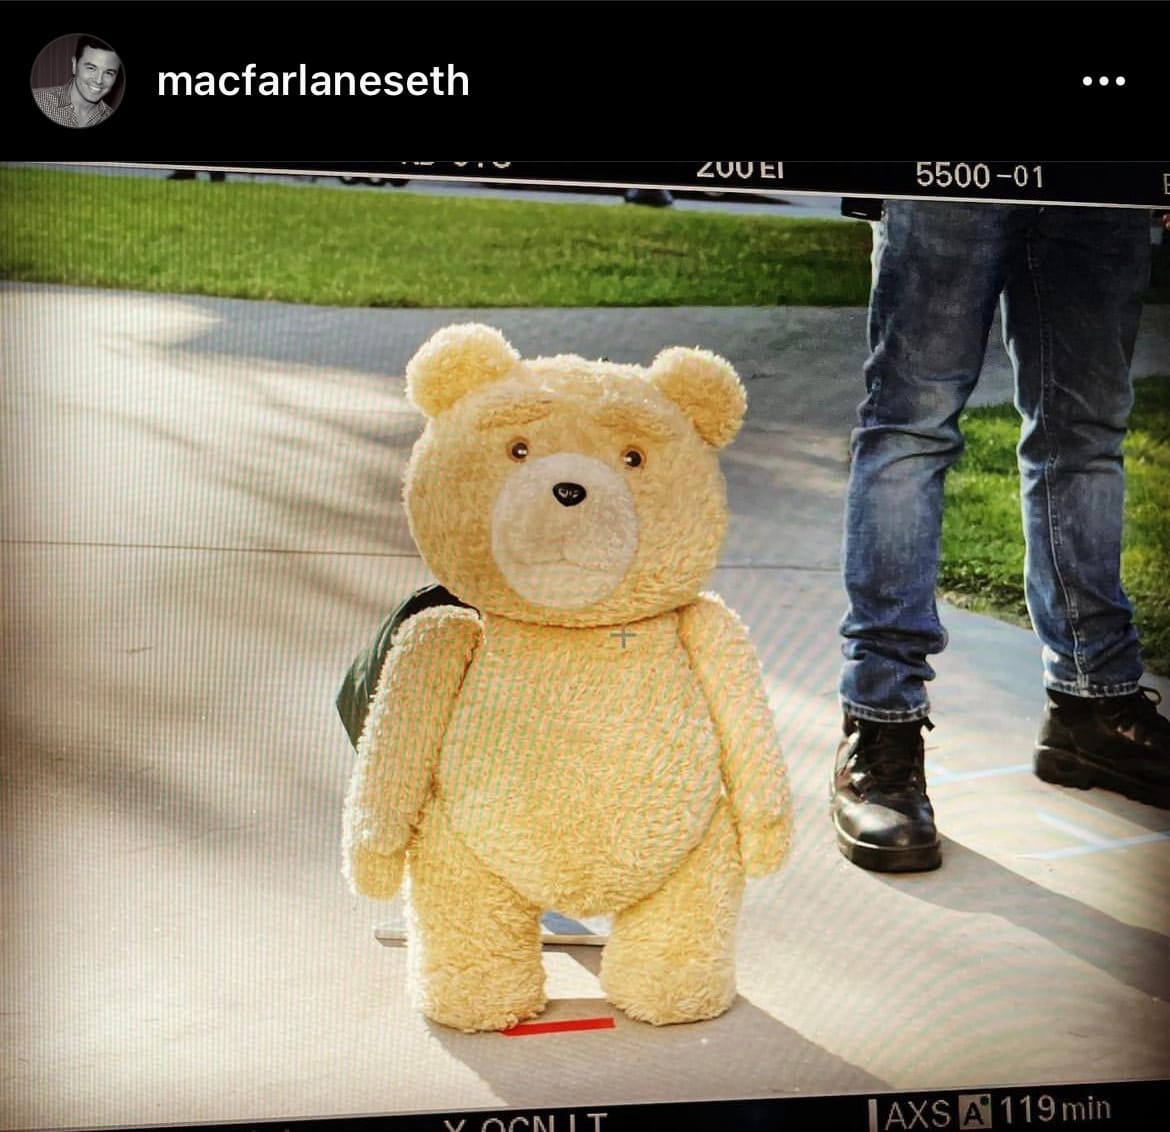 Сериал «Третий лишний» про медведя Теда закончили снимать